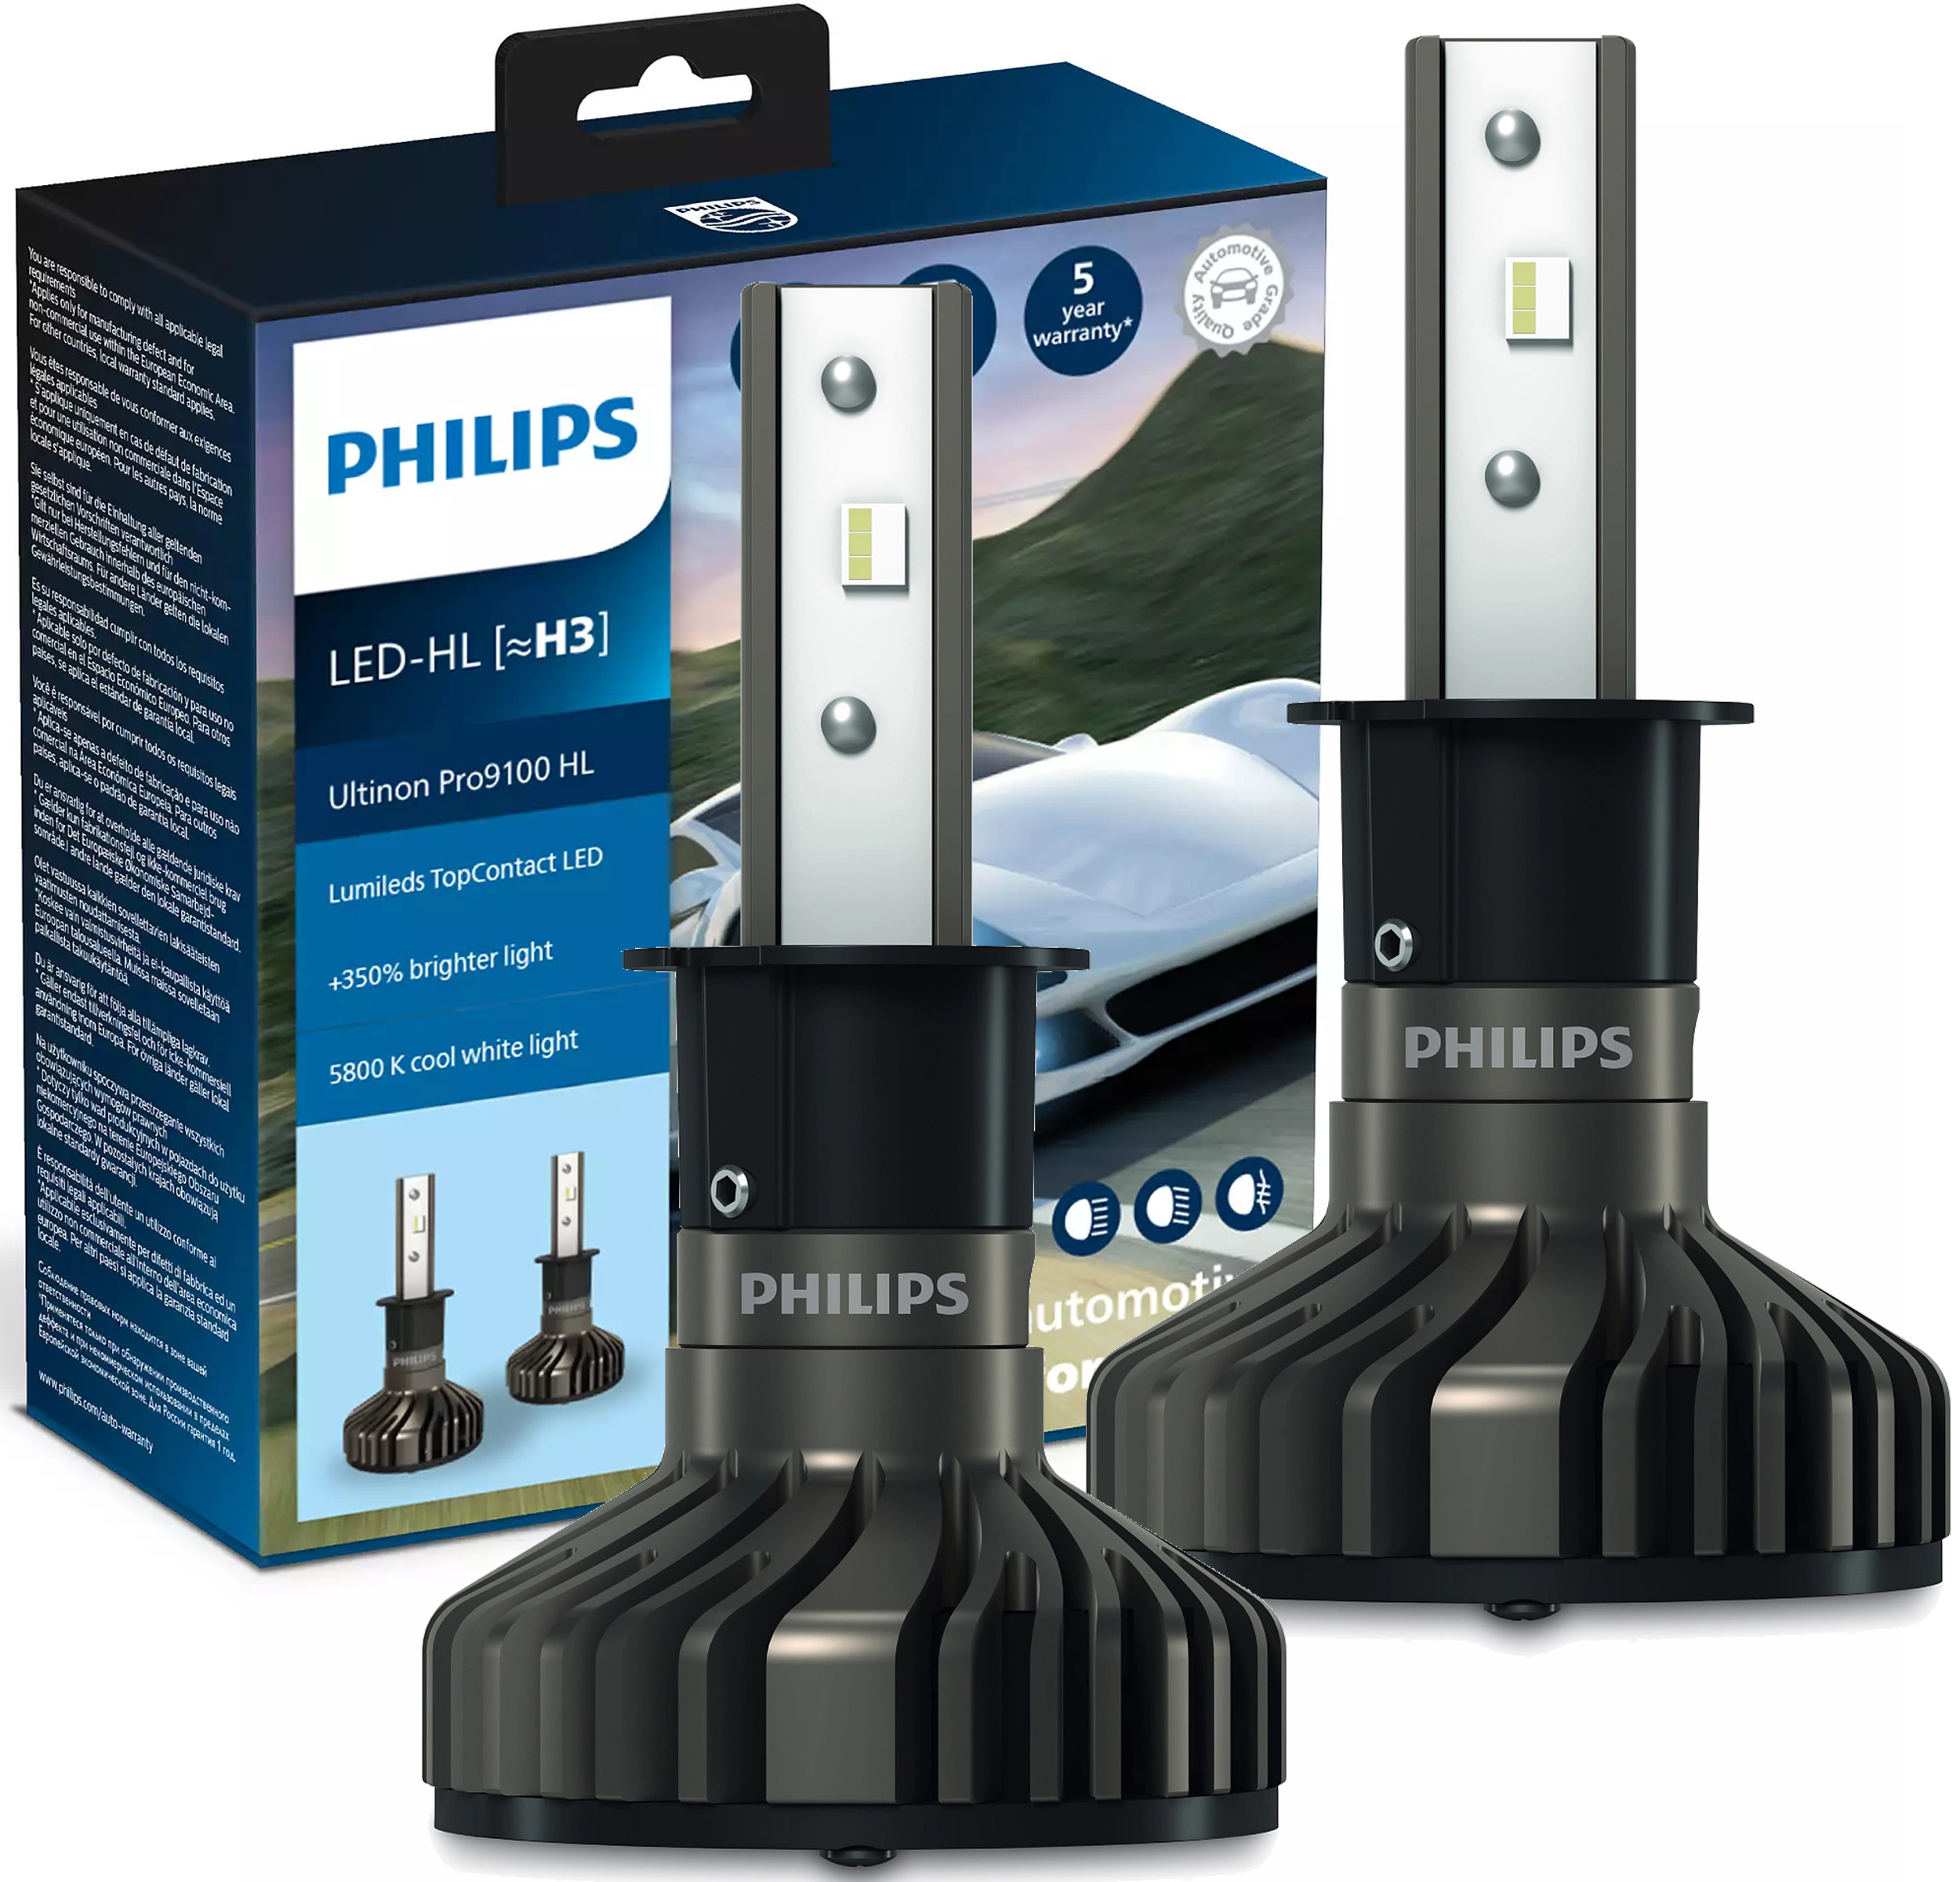 2X H3 LED LAMPEN ULTINON PRO9100 PHILIPS 5800K +350% 11336U91X2 -  France-Xenon